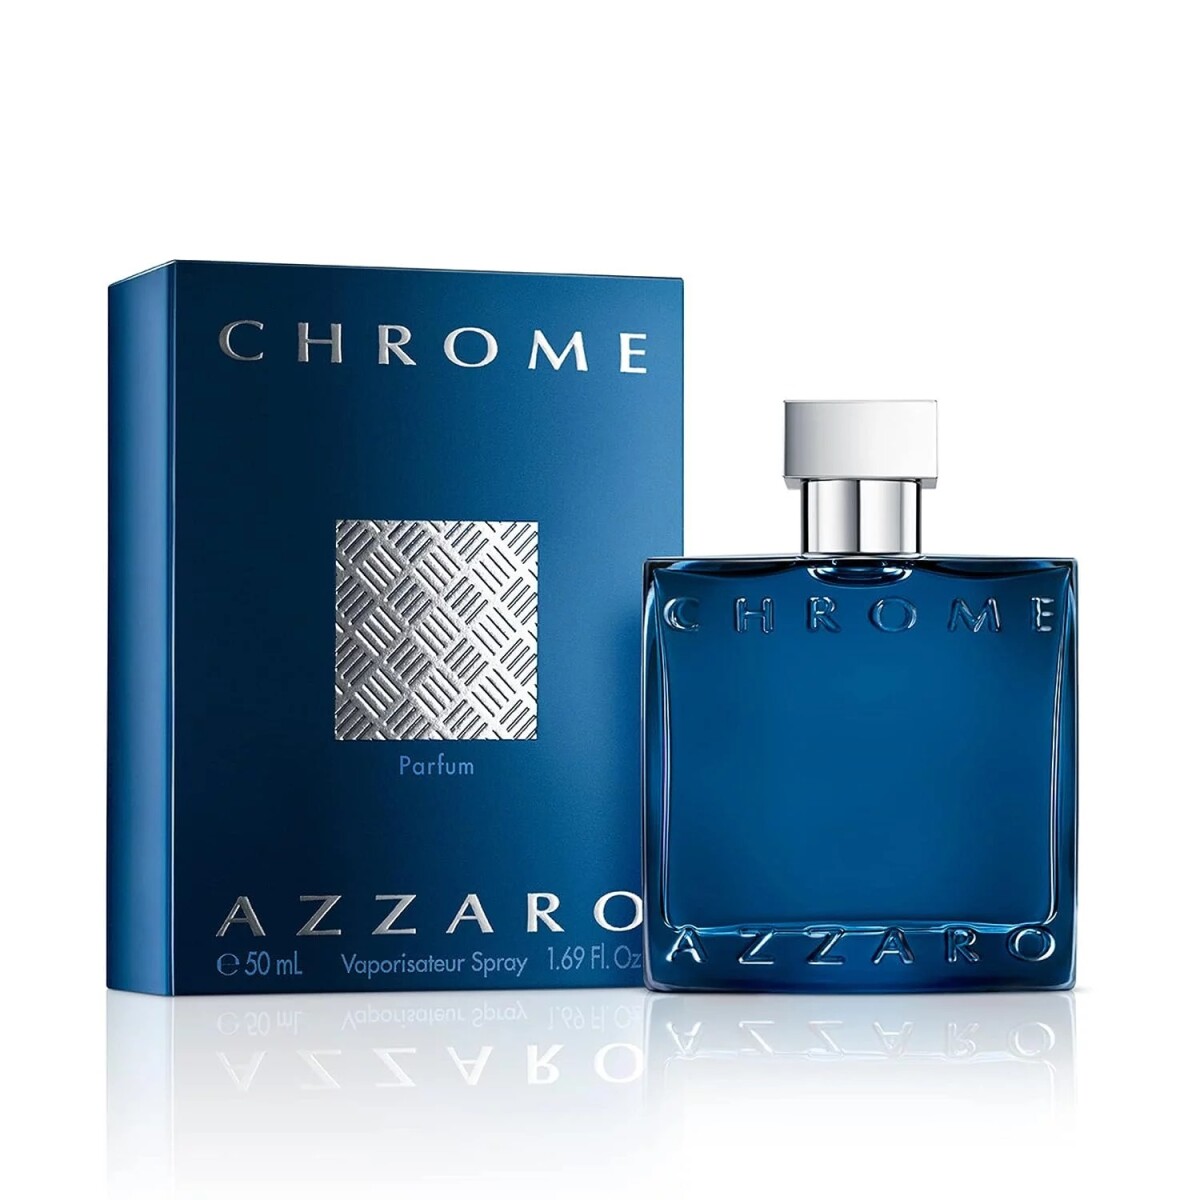 Azzaro Chrome Parfum 50ml 